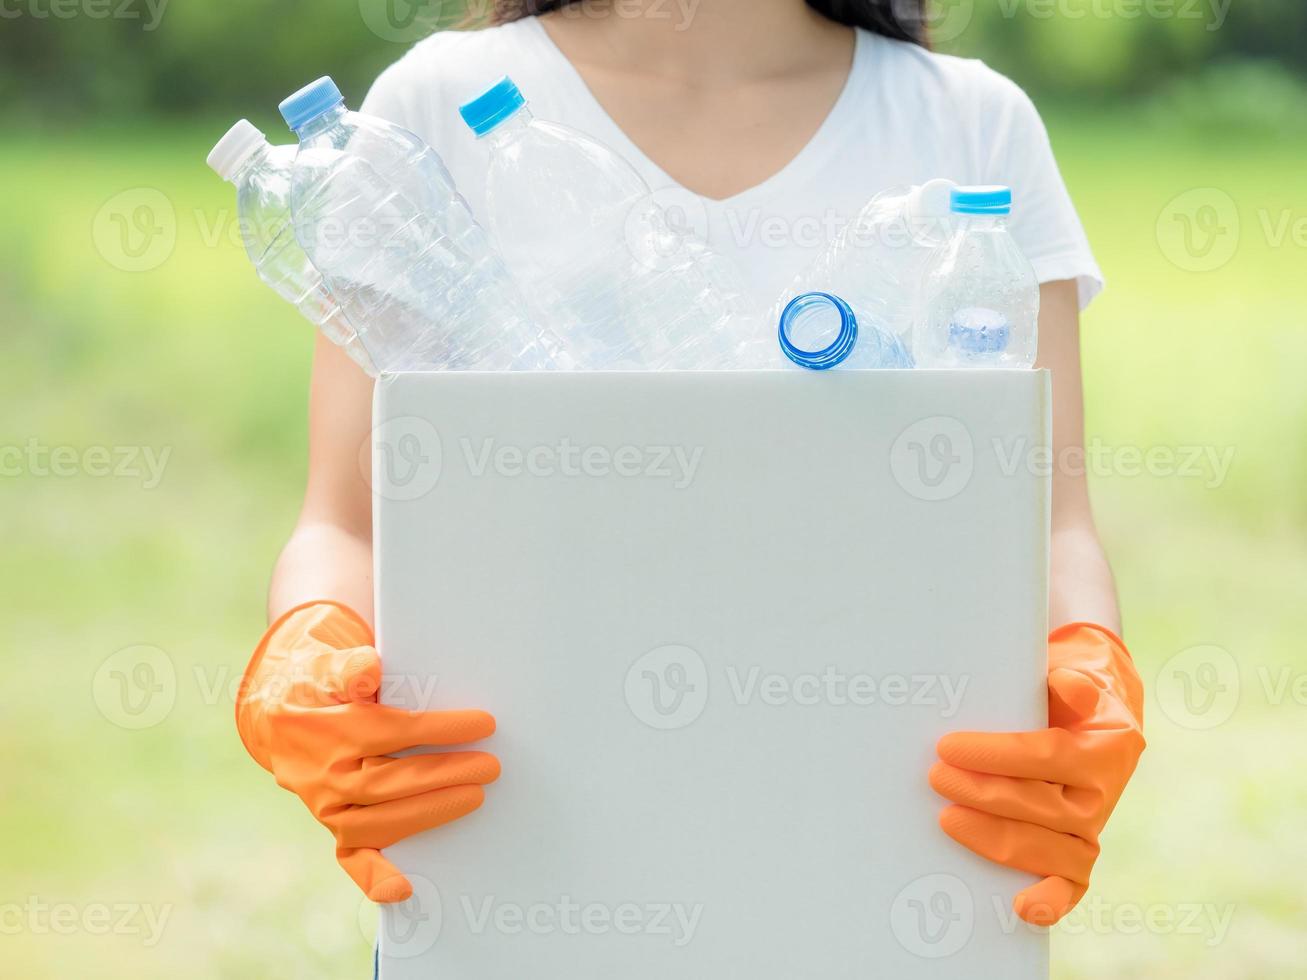 des femmes bénévoles ramassent des bouteilles d'eau en plastique dans le parc photo